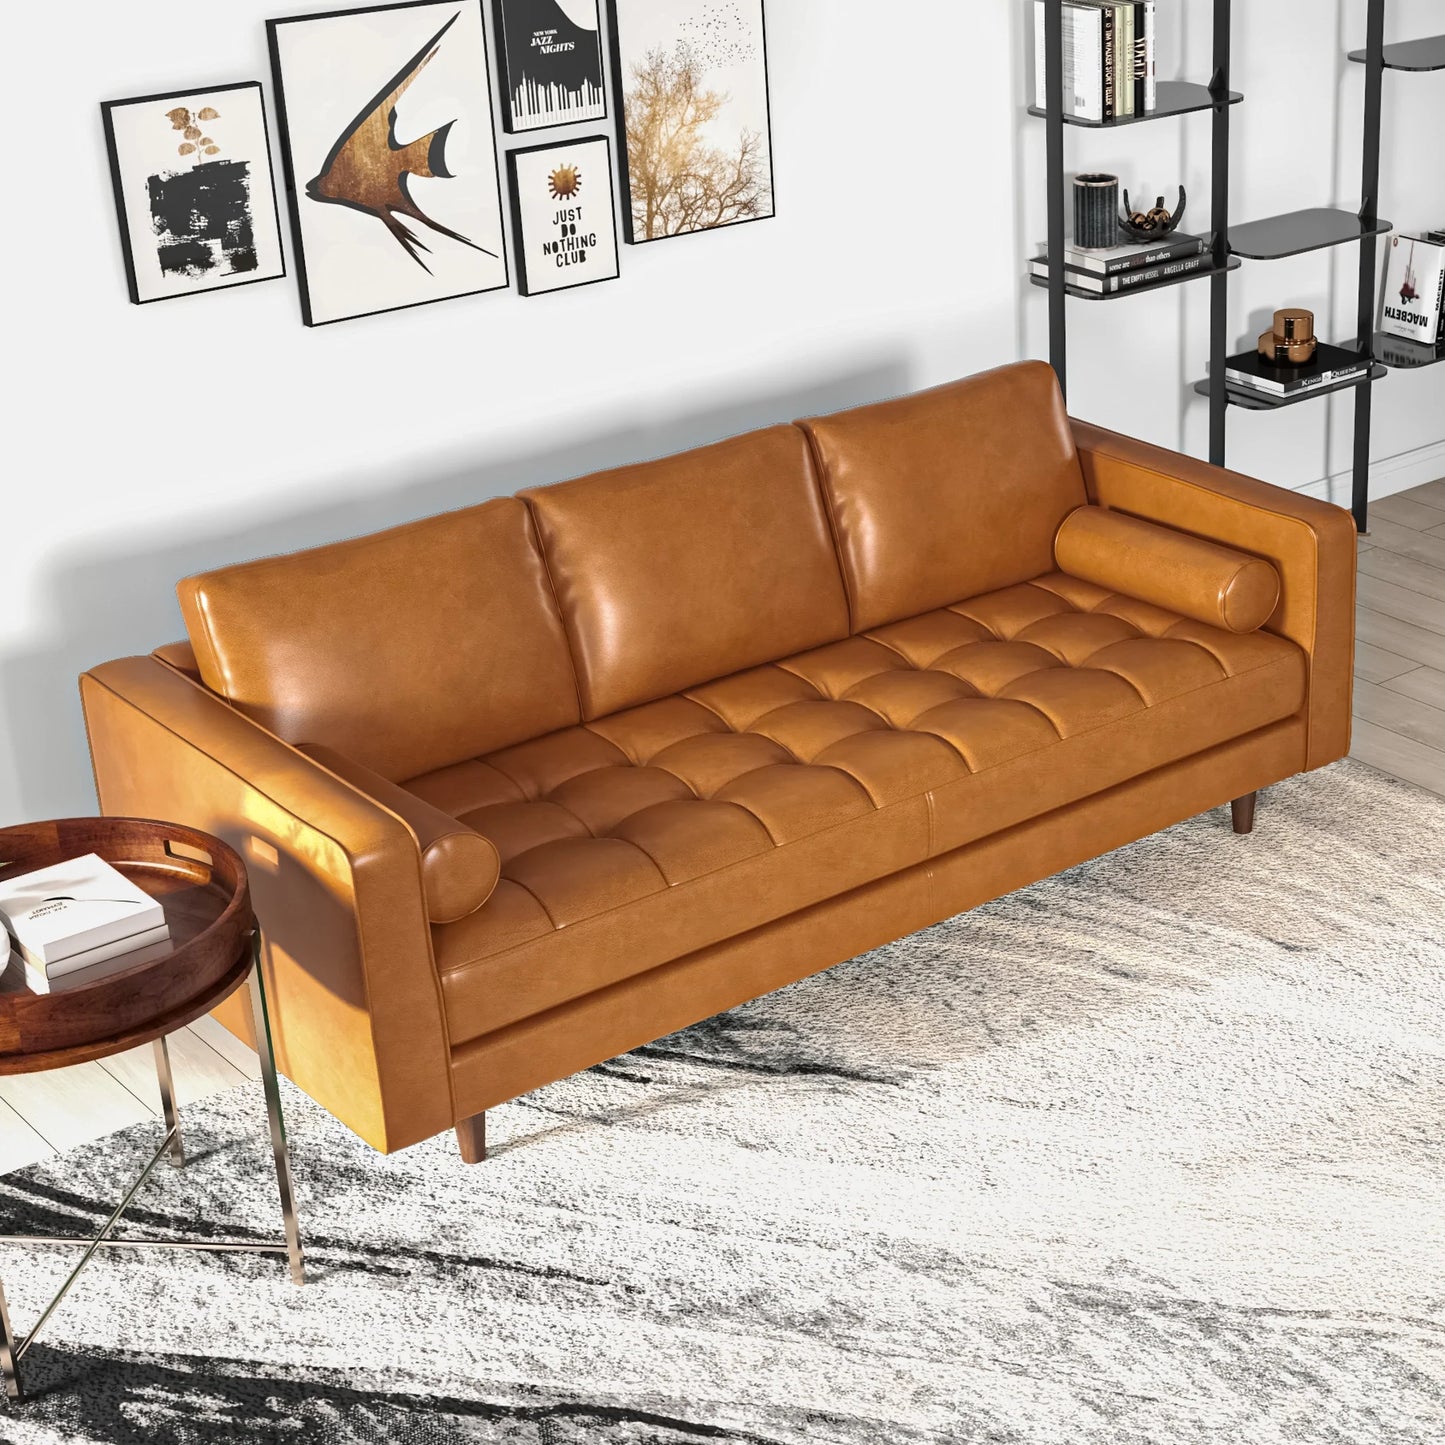 Tessa Leather Sofa (Tan Leather)